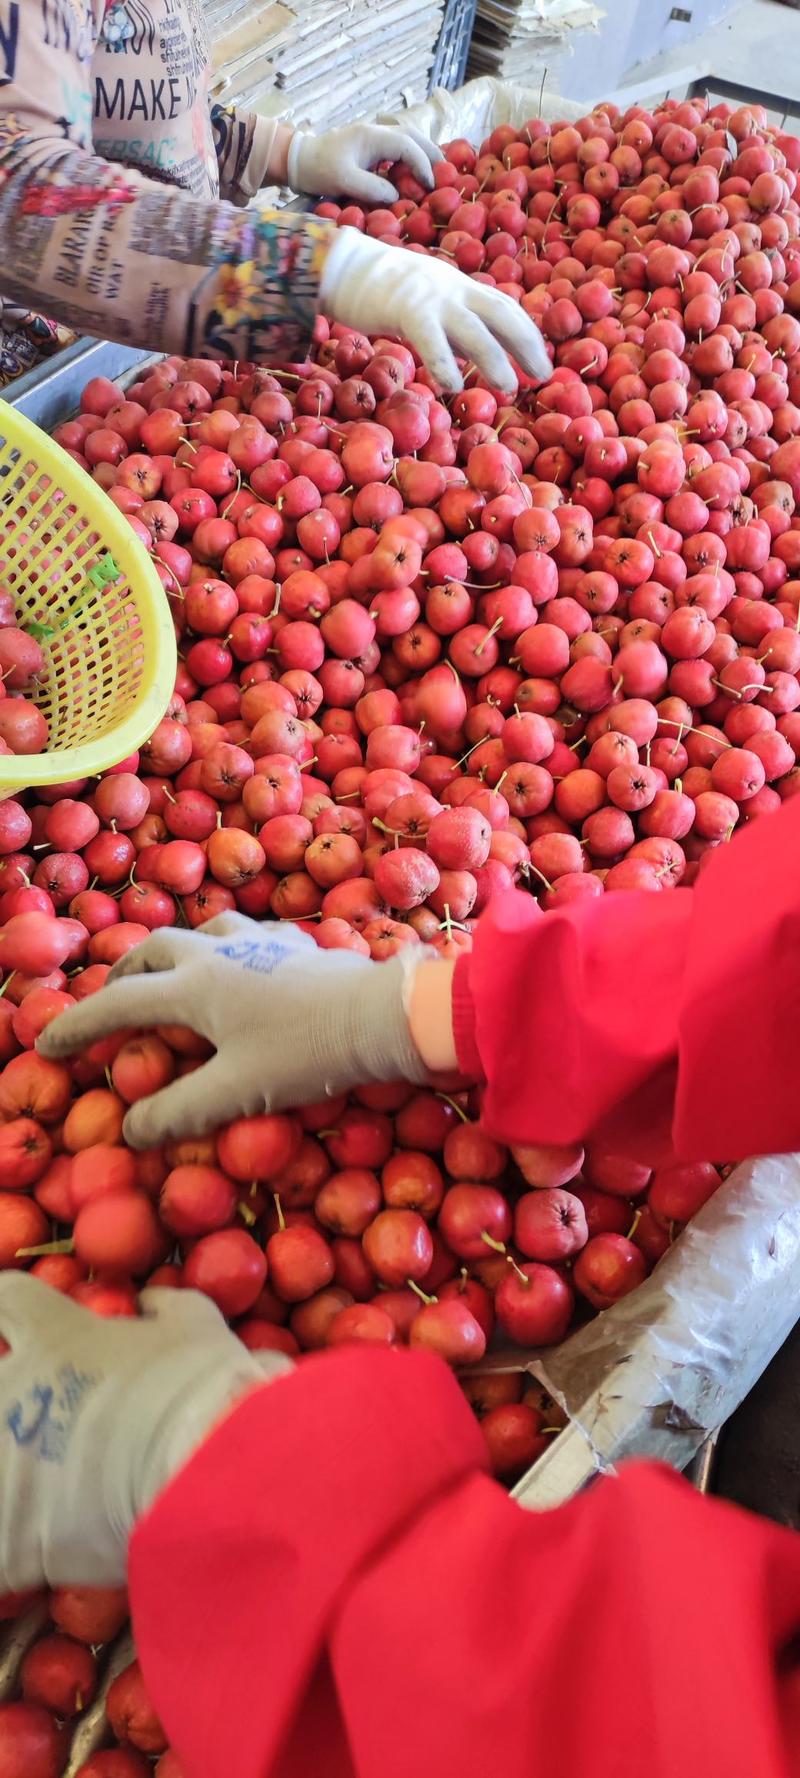 大五棱山楂全年有货保证质量坏果包赔糖葫芦专用果